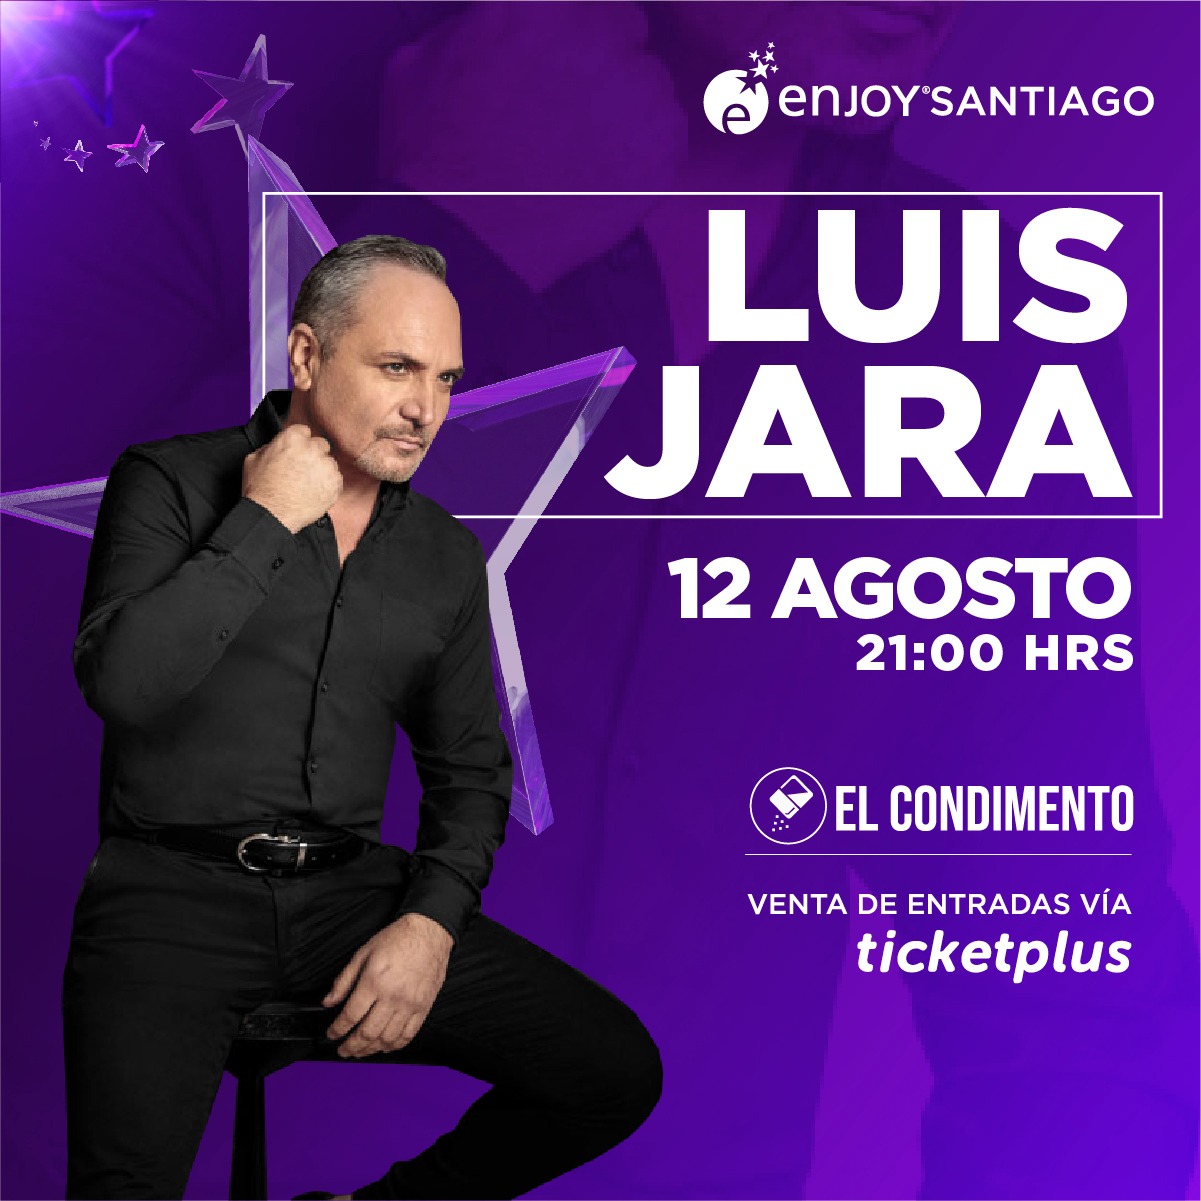 ENJOY: Música en vivo, humor y fiesta será parte de la parrilla de actividades que tiene Enjoy Santiago durante el mes de agosto